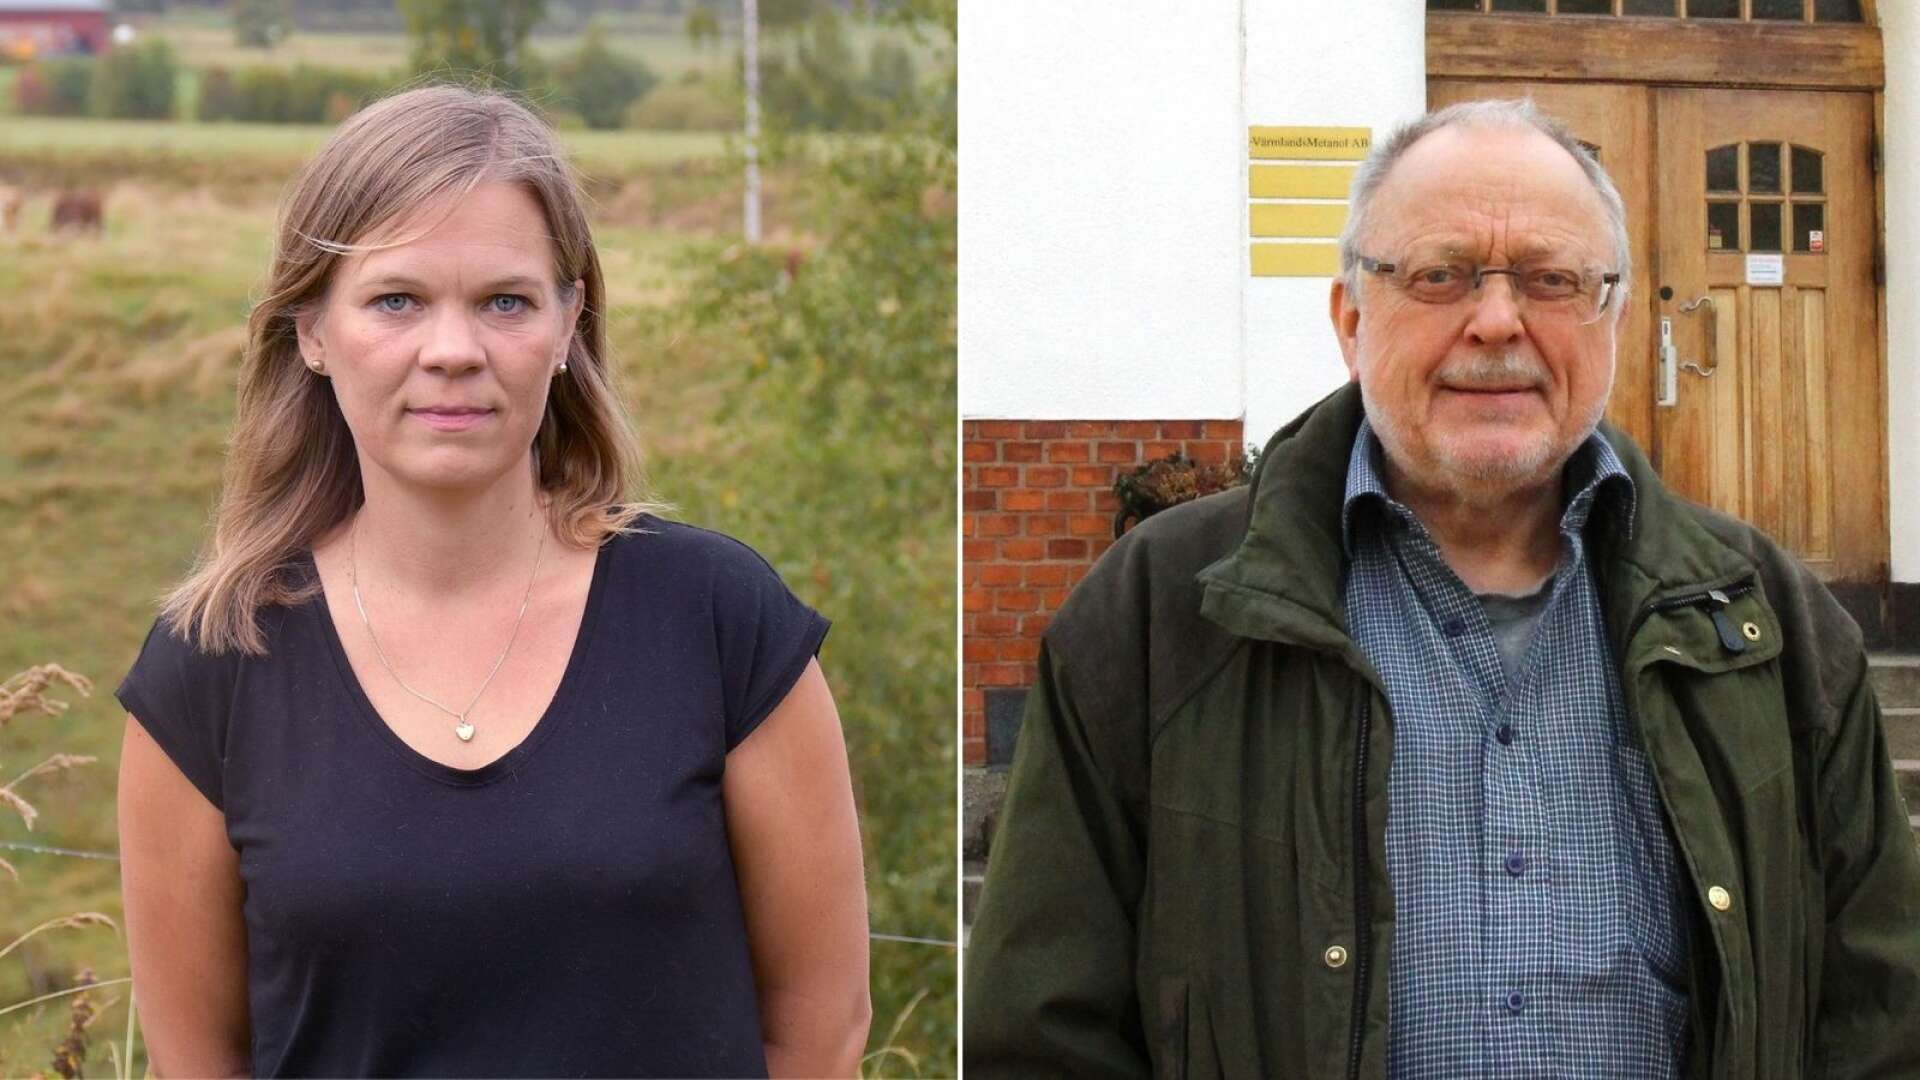 Sunnes kommunalråd Kristina Lundberg (C) reagerar på att kommunstyrelseledamoten Björn Gillberg (HS) yrkat avslag i ett ärende han själv initierat.